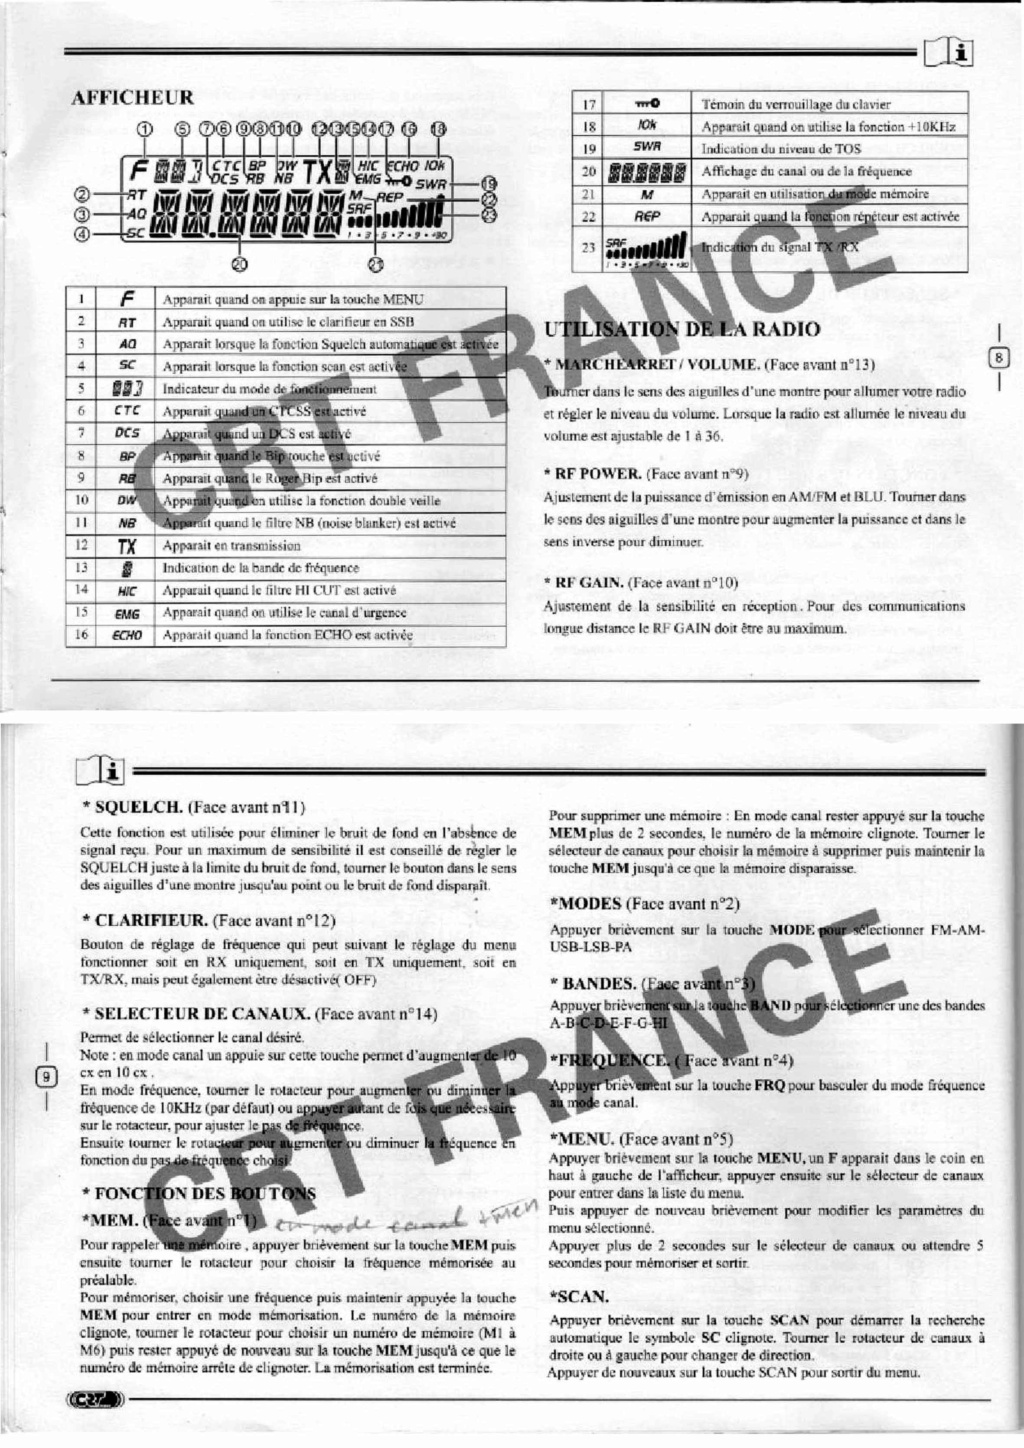 Tag notice sur La Planète Cibi Francophone Feuill16